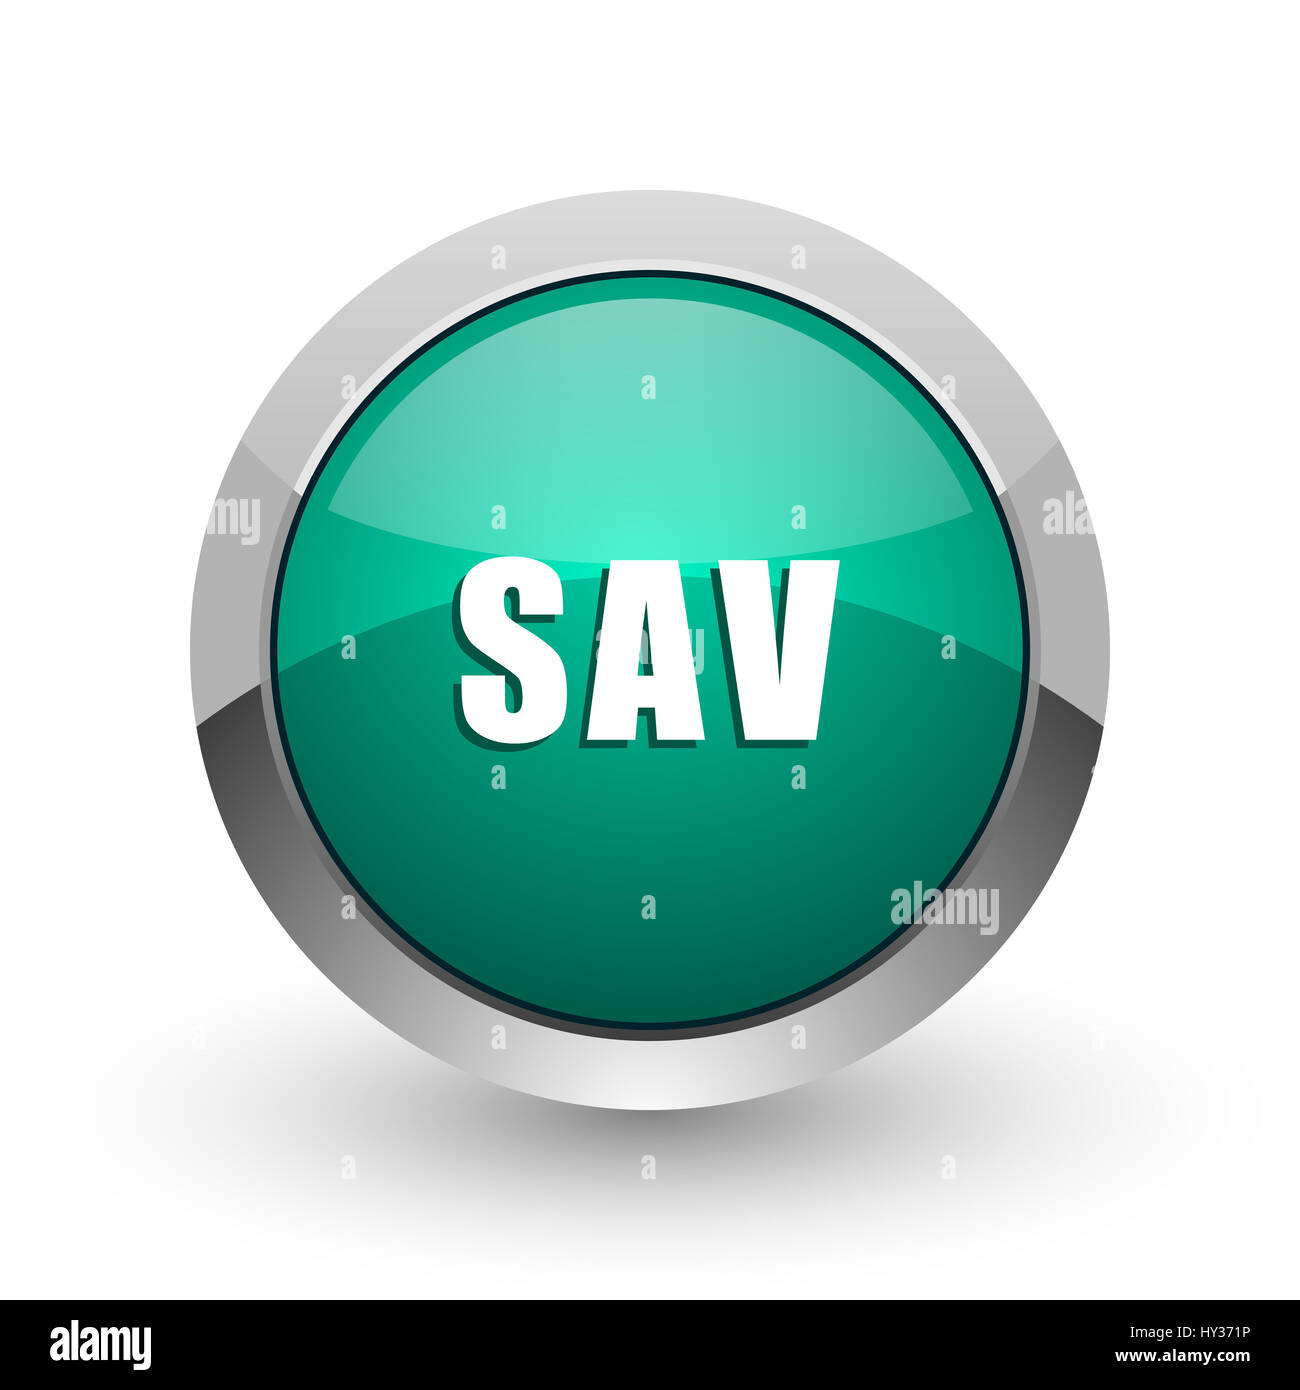 Sav silver metallic chrome web design green round internet icon with shadow on white background. Stock Photo